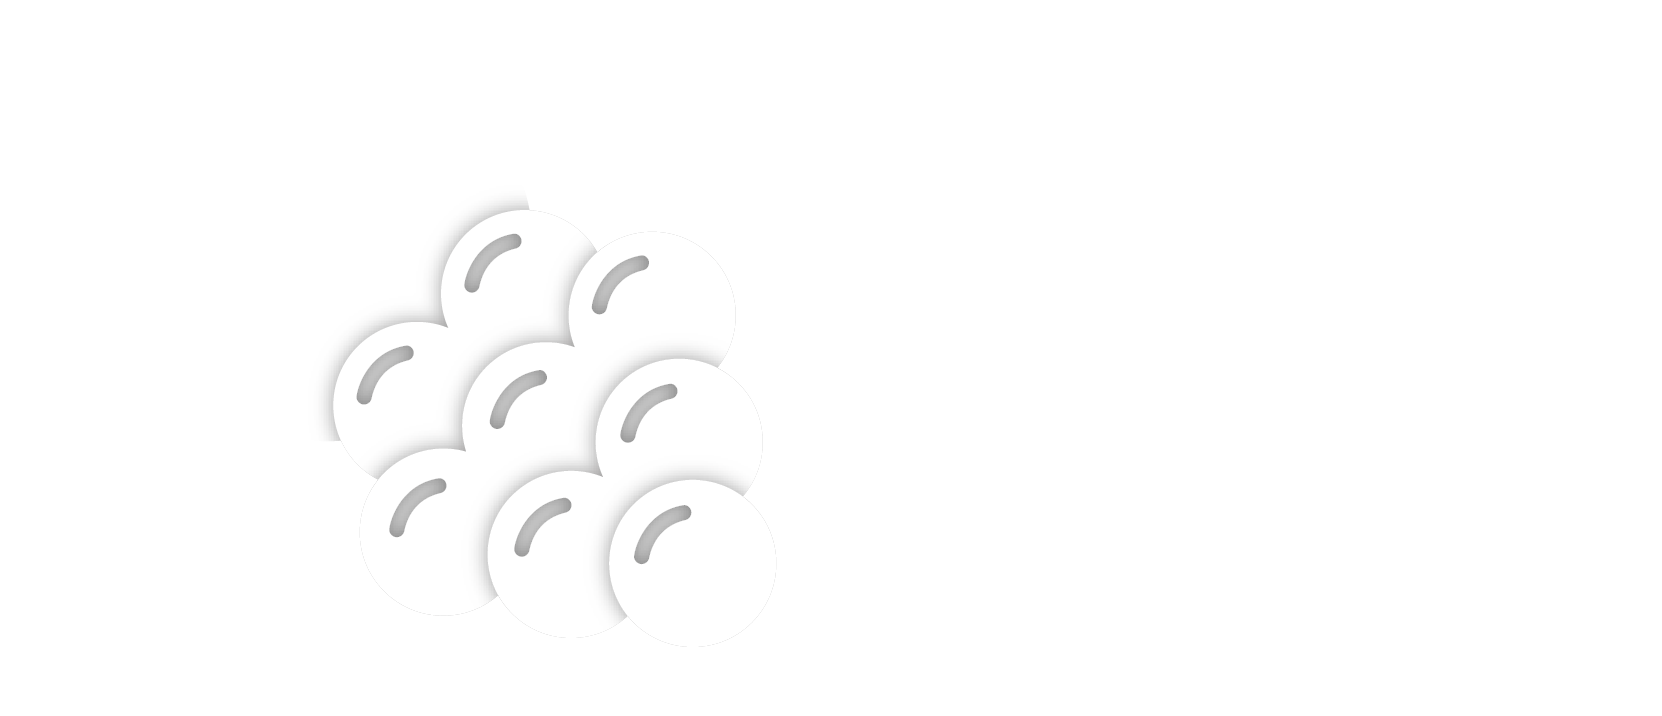 Logo Grape NFT blanc